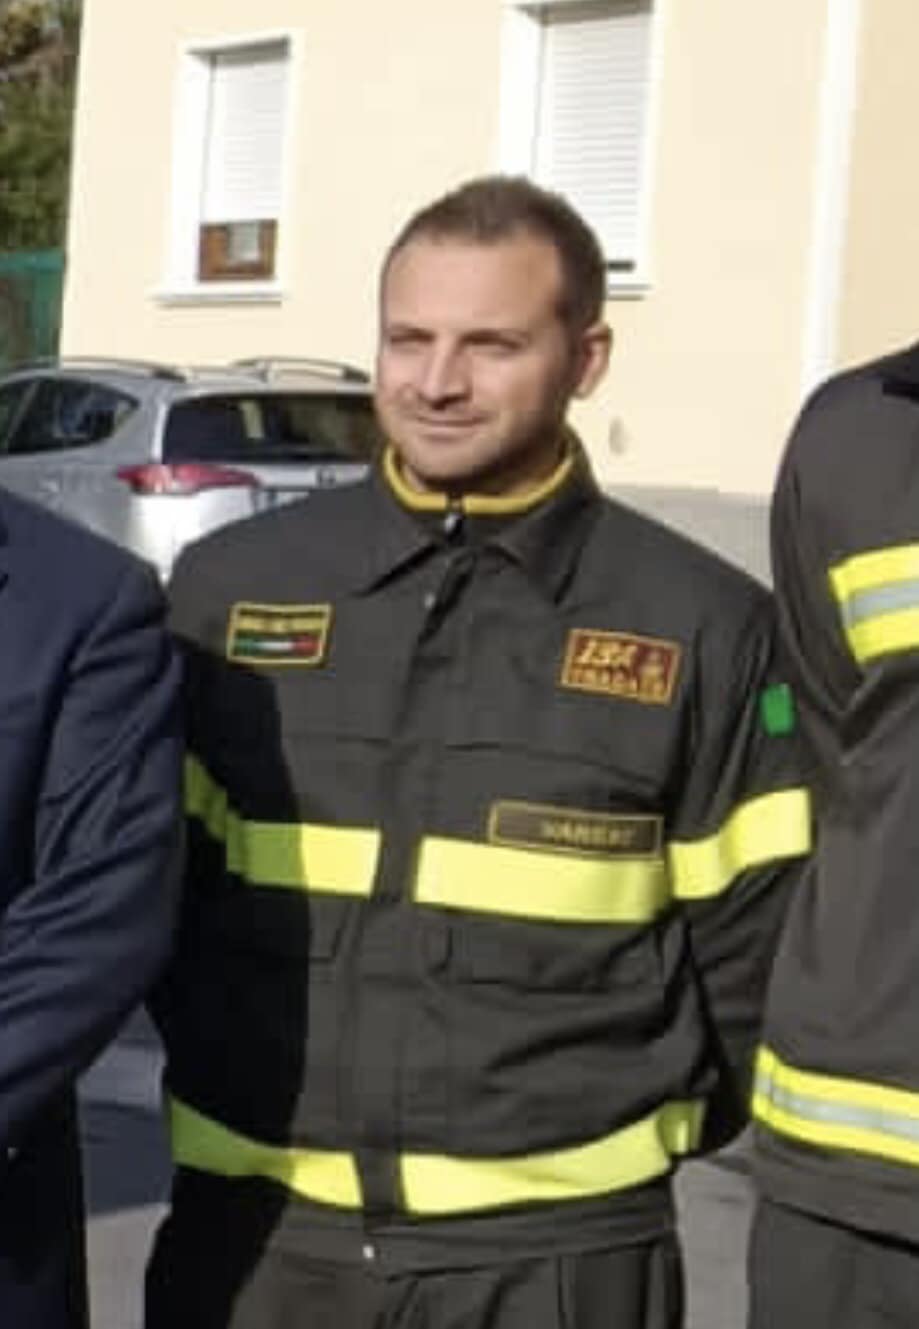 Pompiere di Tradate salva uomo che voleva suicidarsi: elogio ufficiale